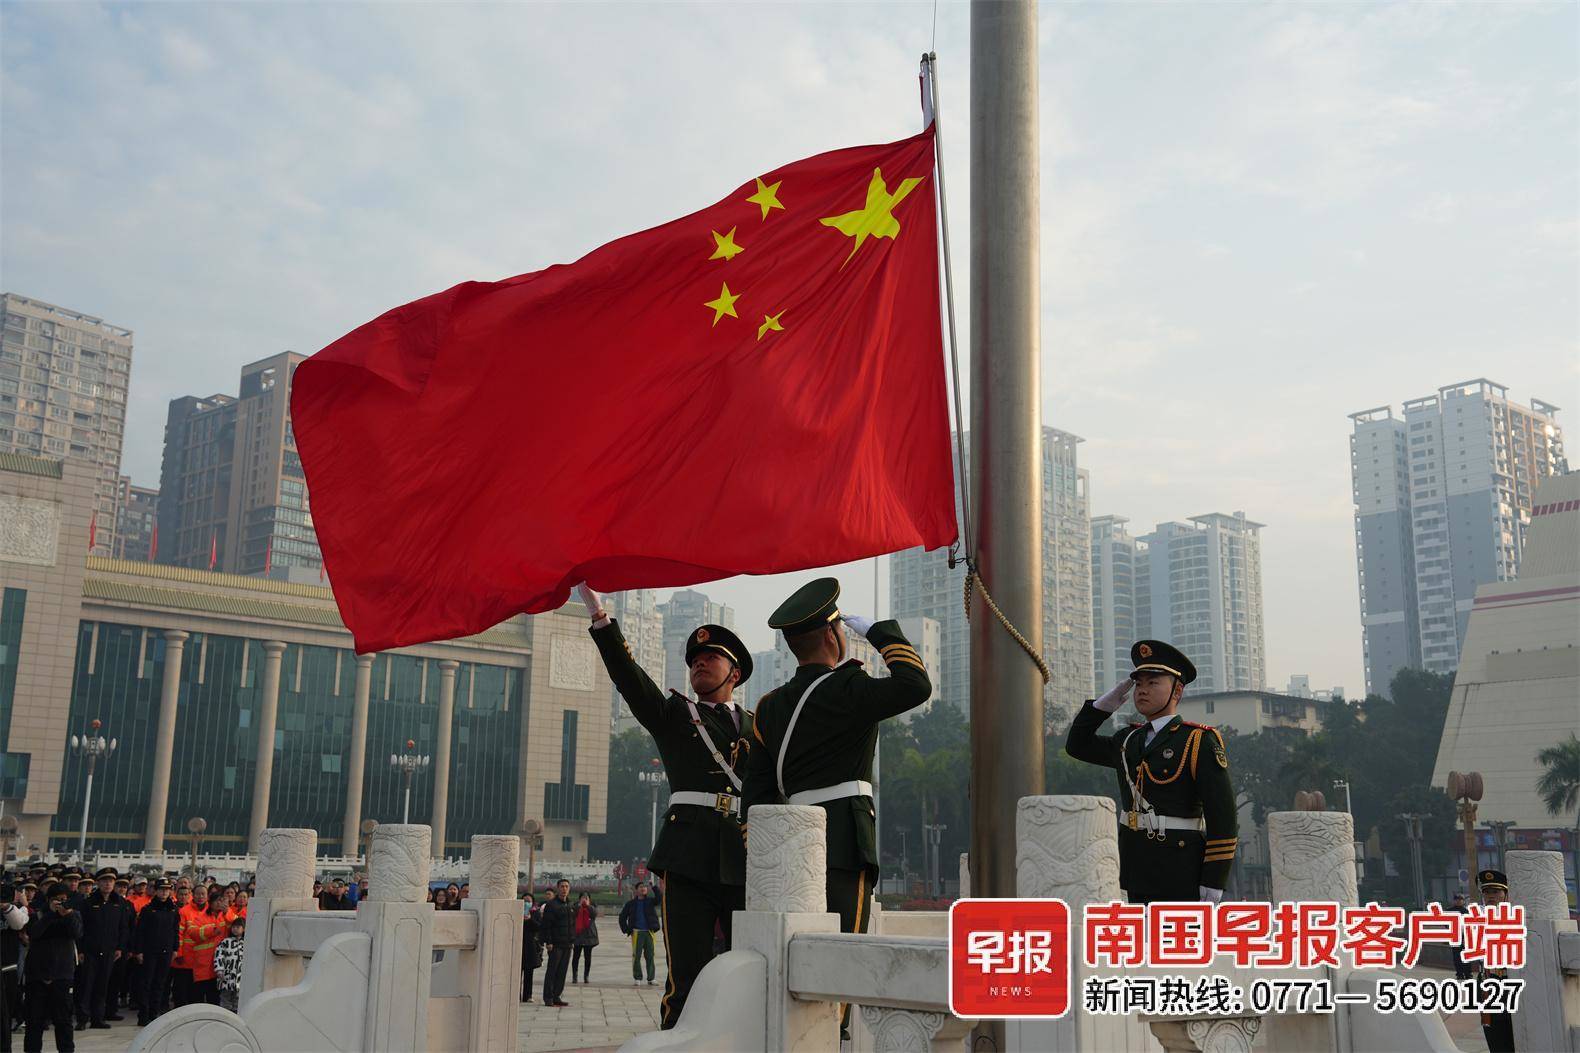 南宁市民族广场举行升旗仪式祝福祖国